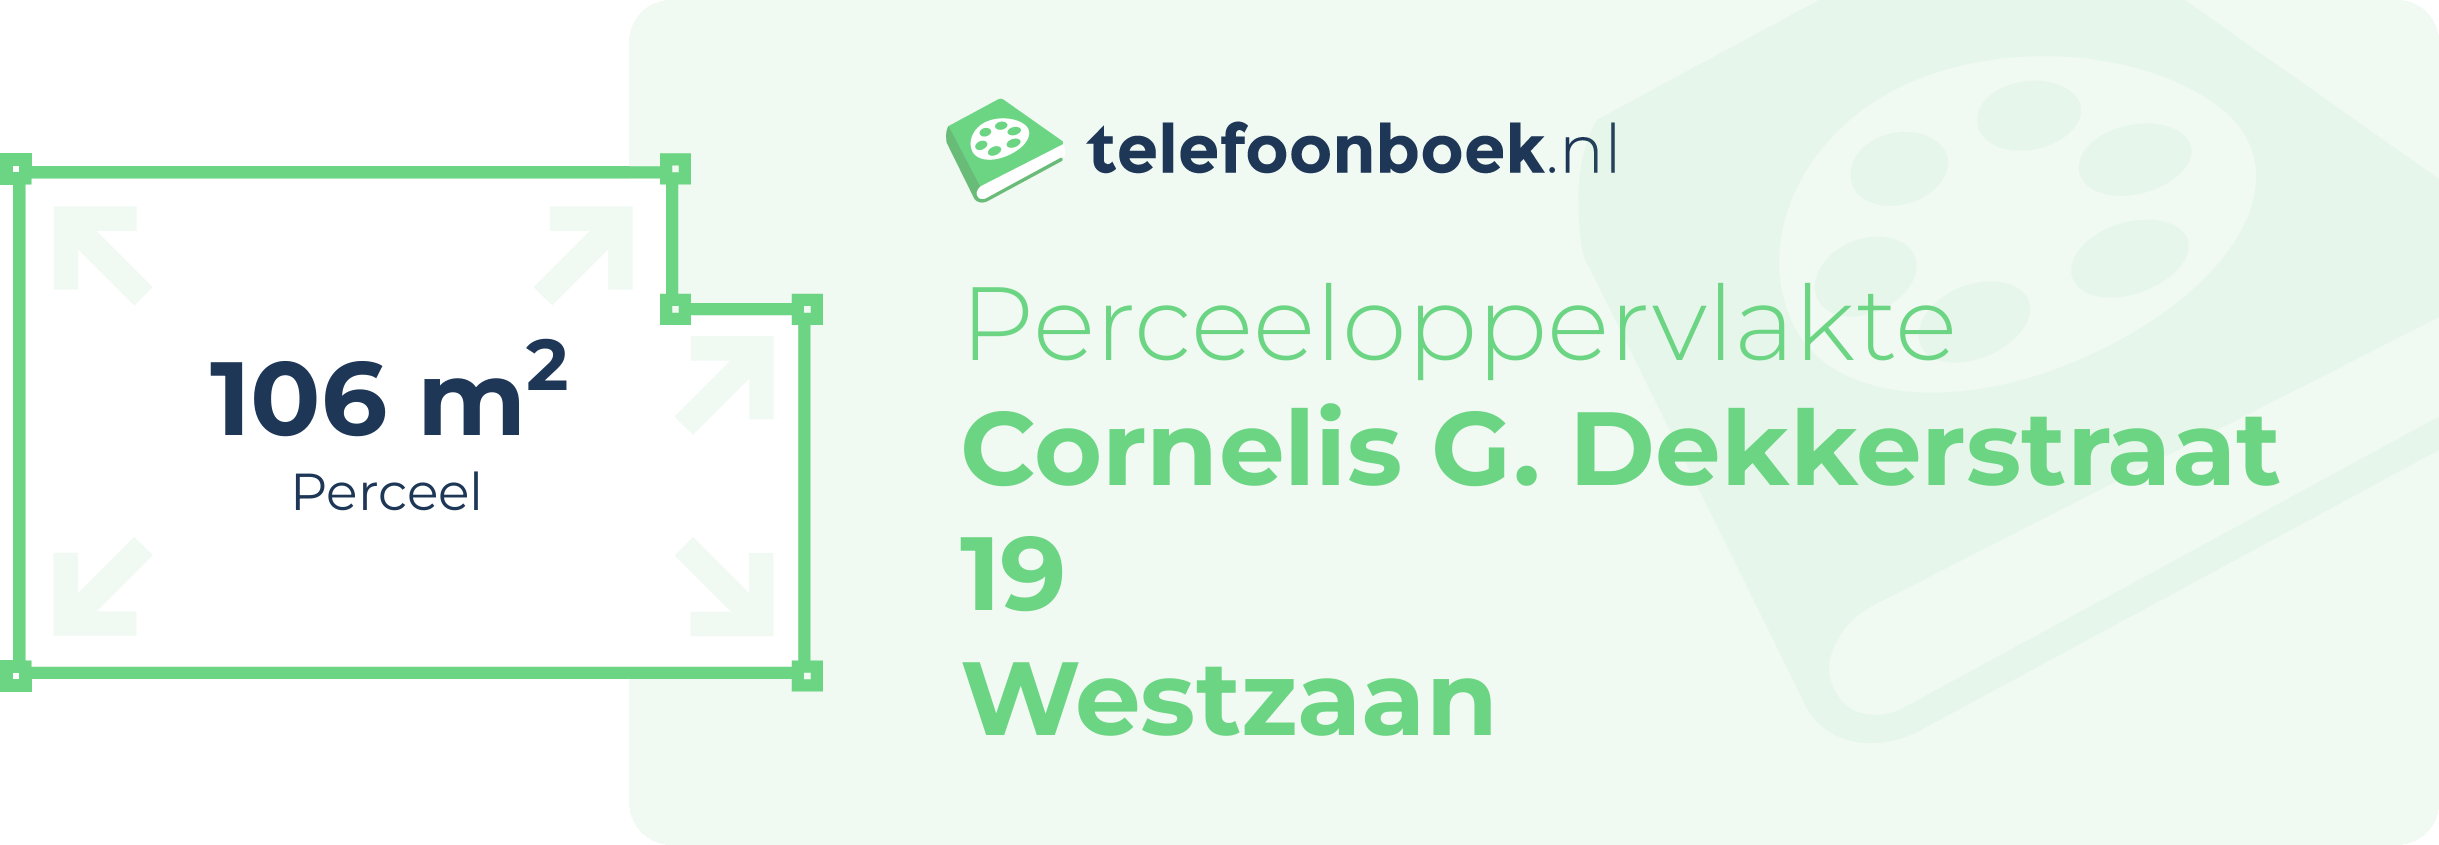 Perceeloppervlakte Cornelis G. Dekkerstraat 19 Westzaan